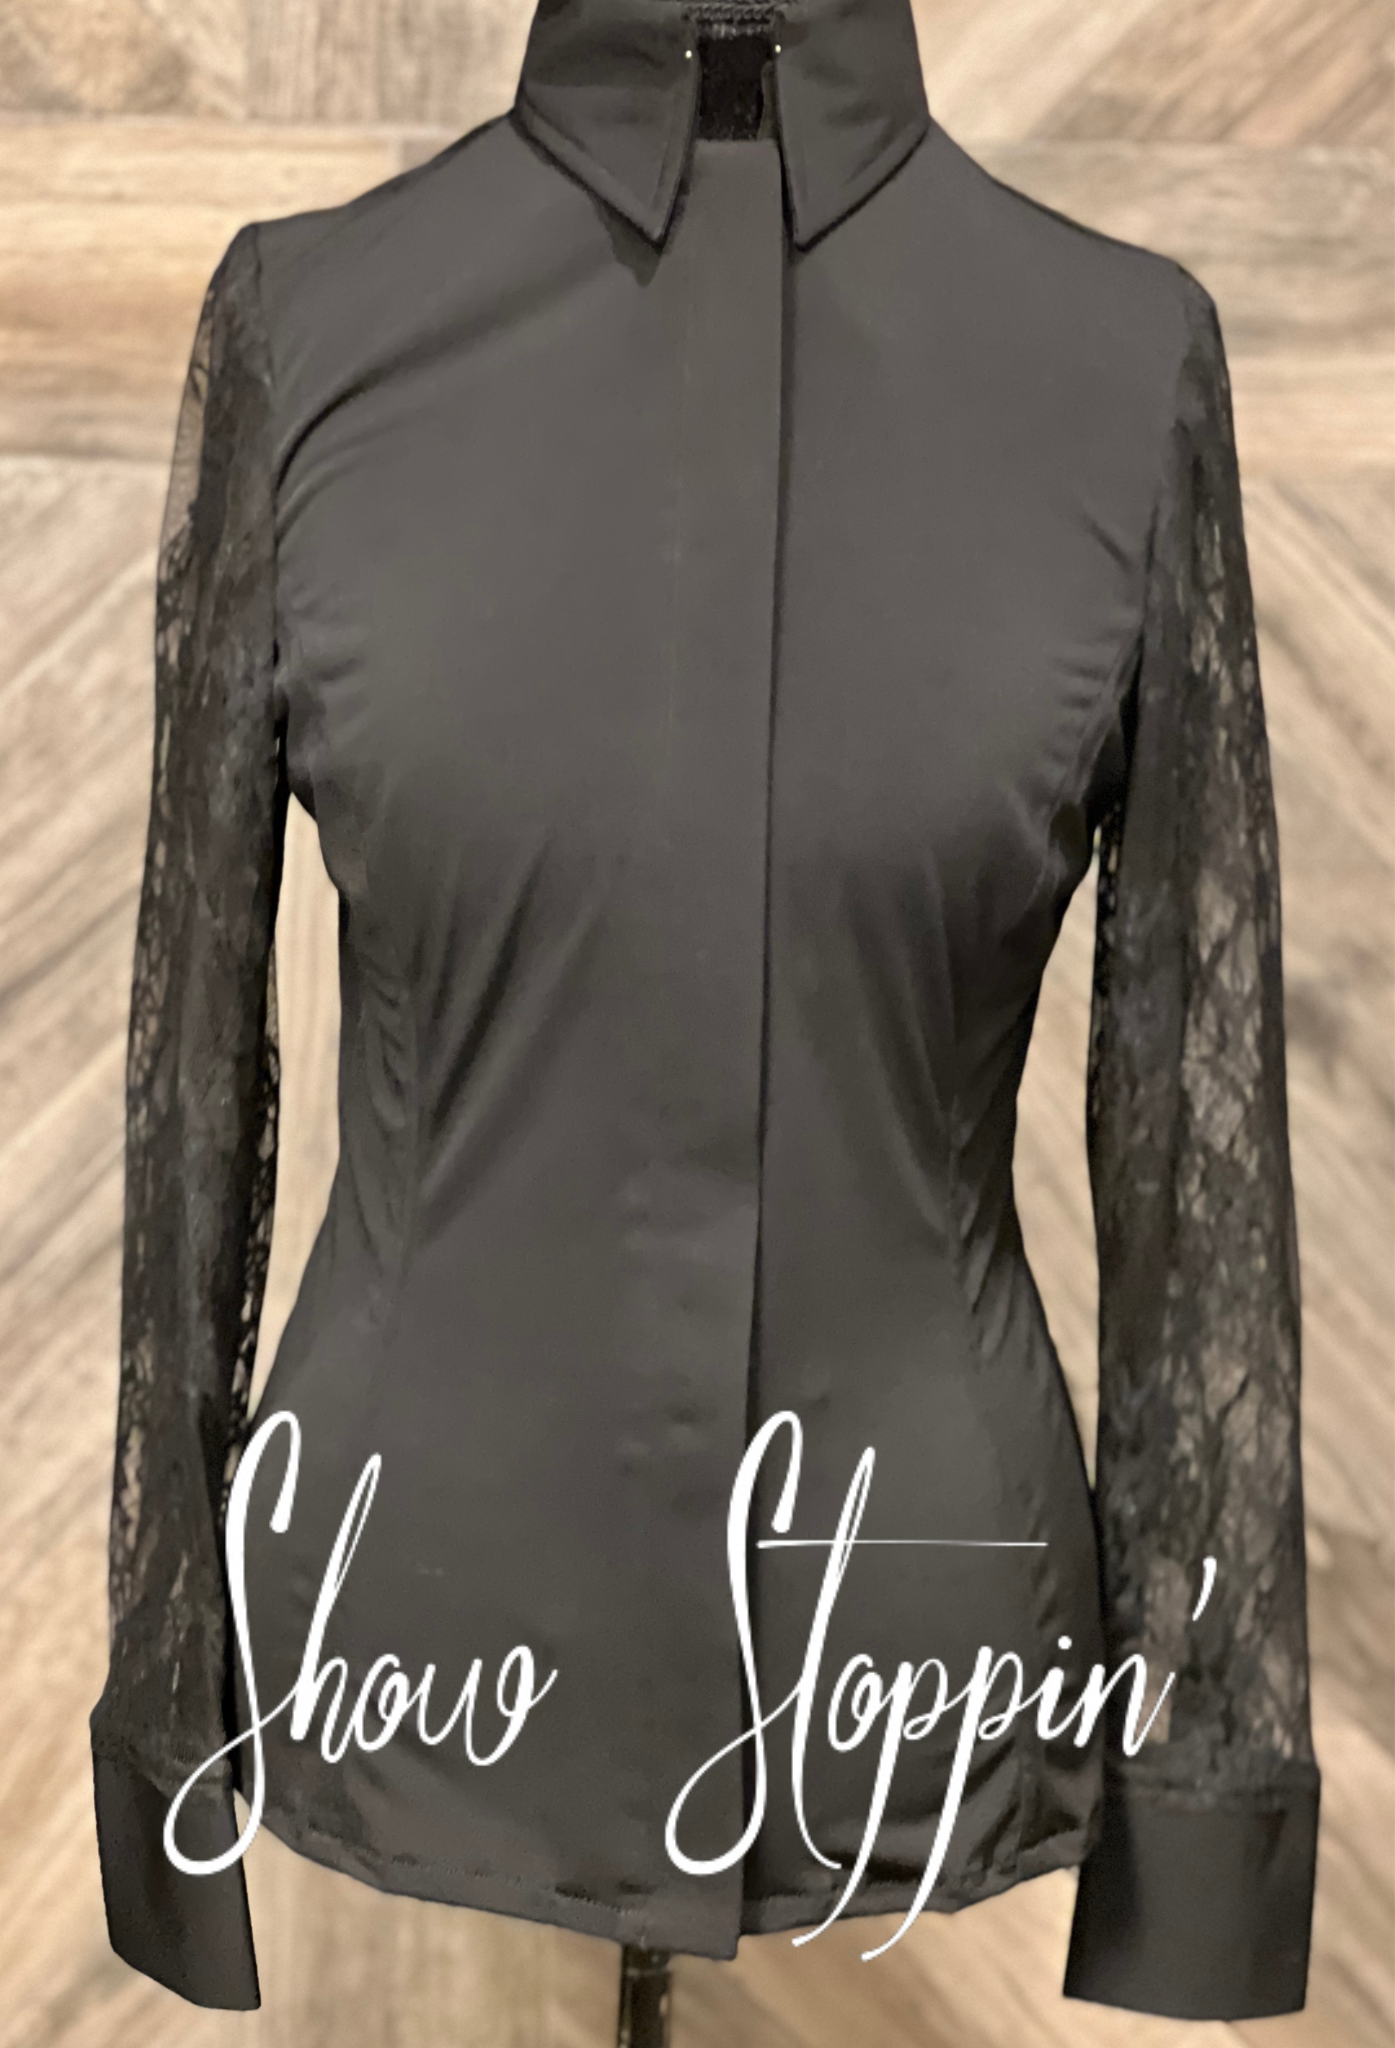 Black Lace Sleeve Hidden Zipper Light Weight Fitted Shirt